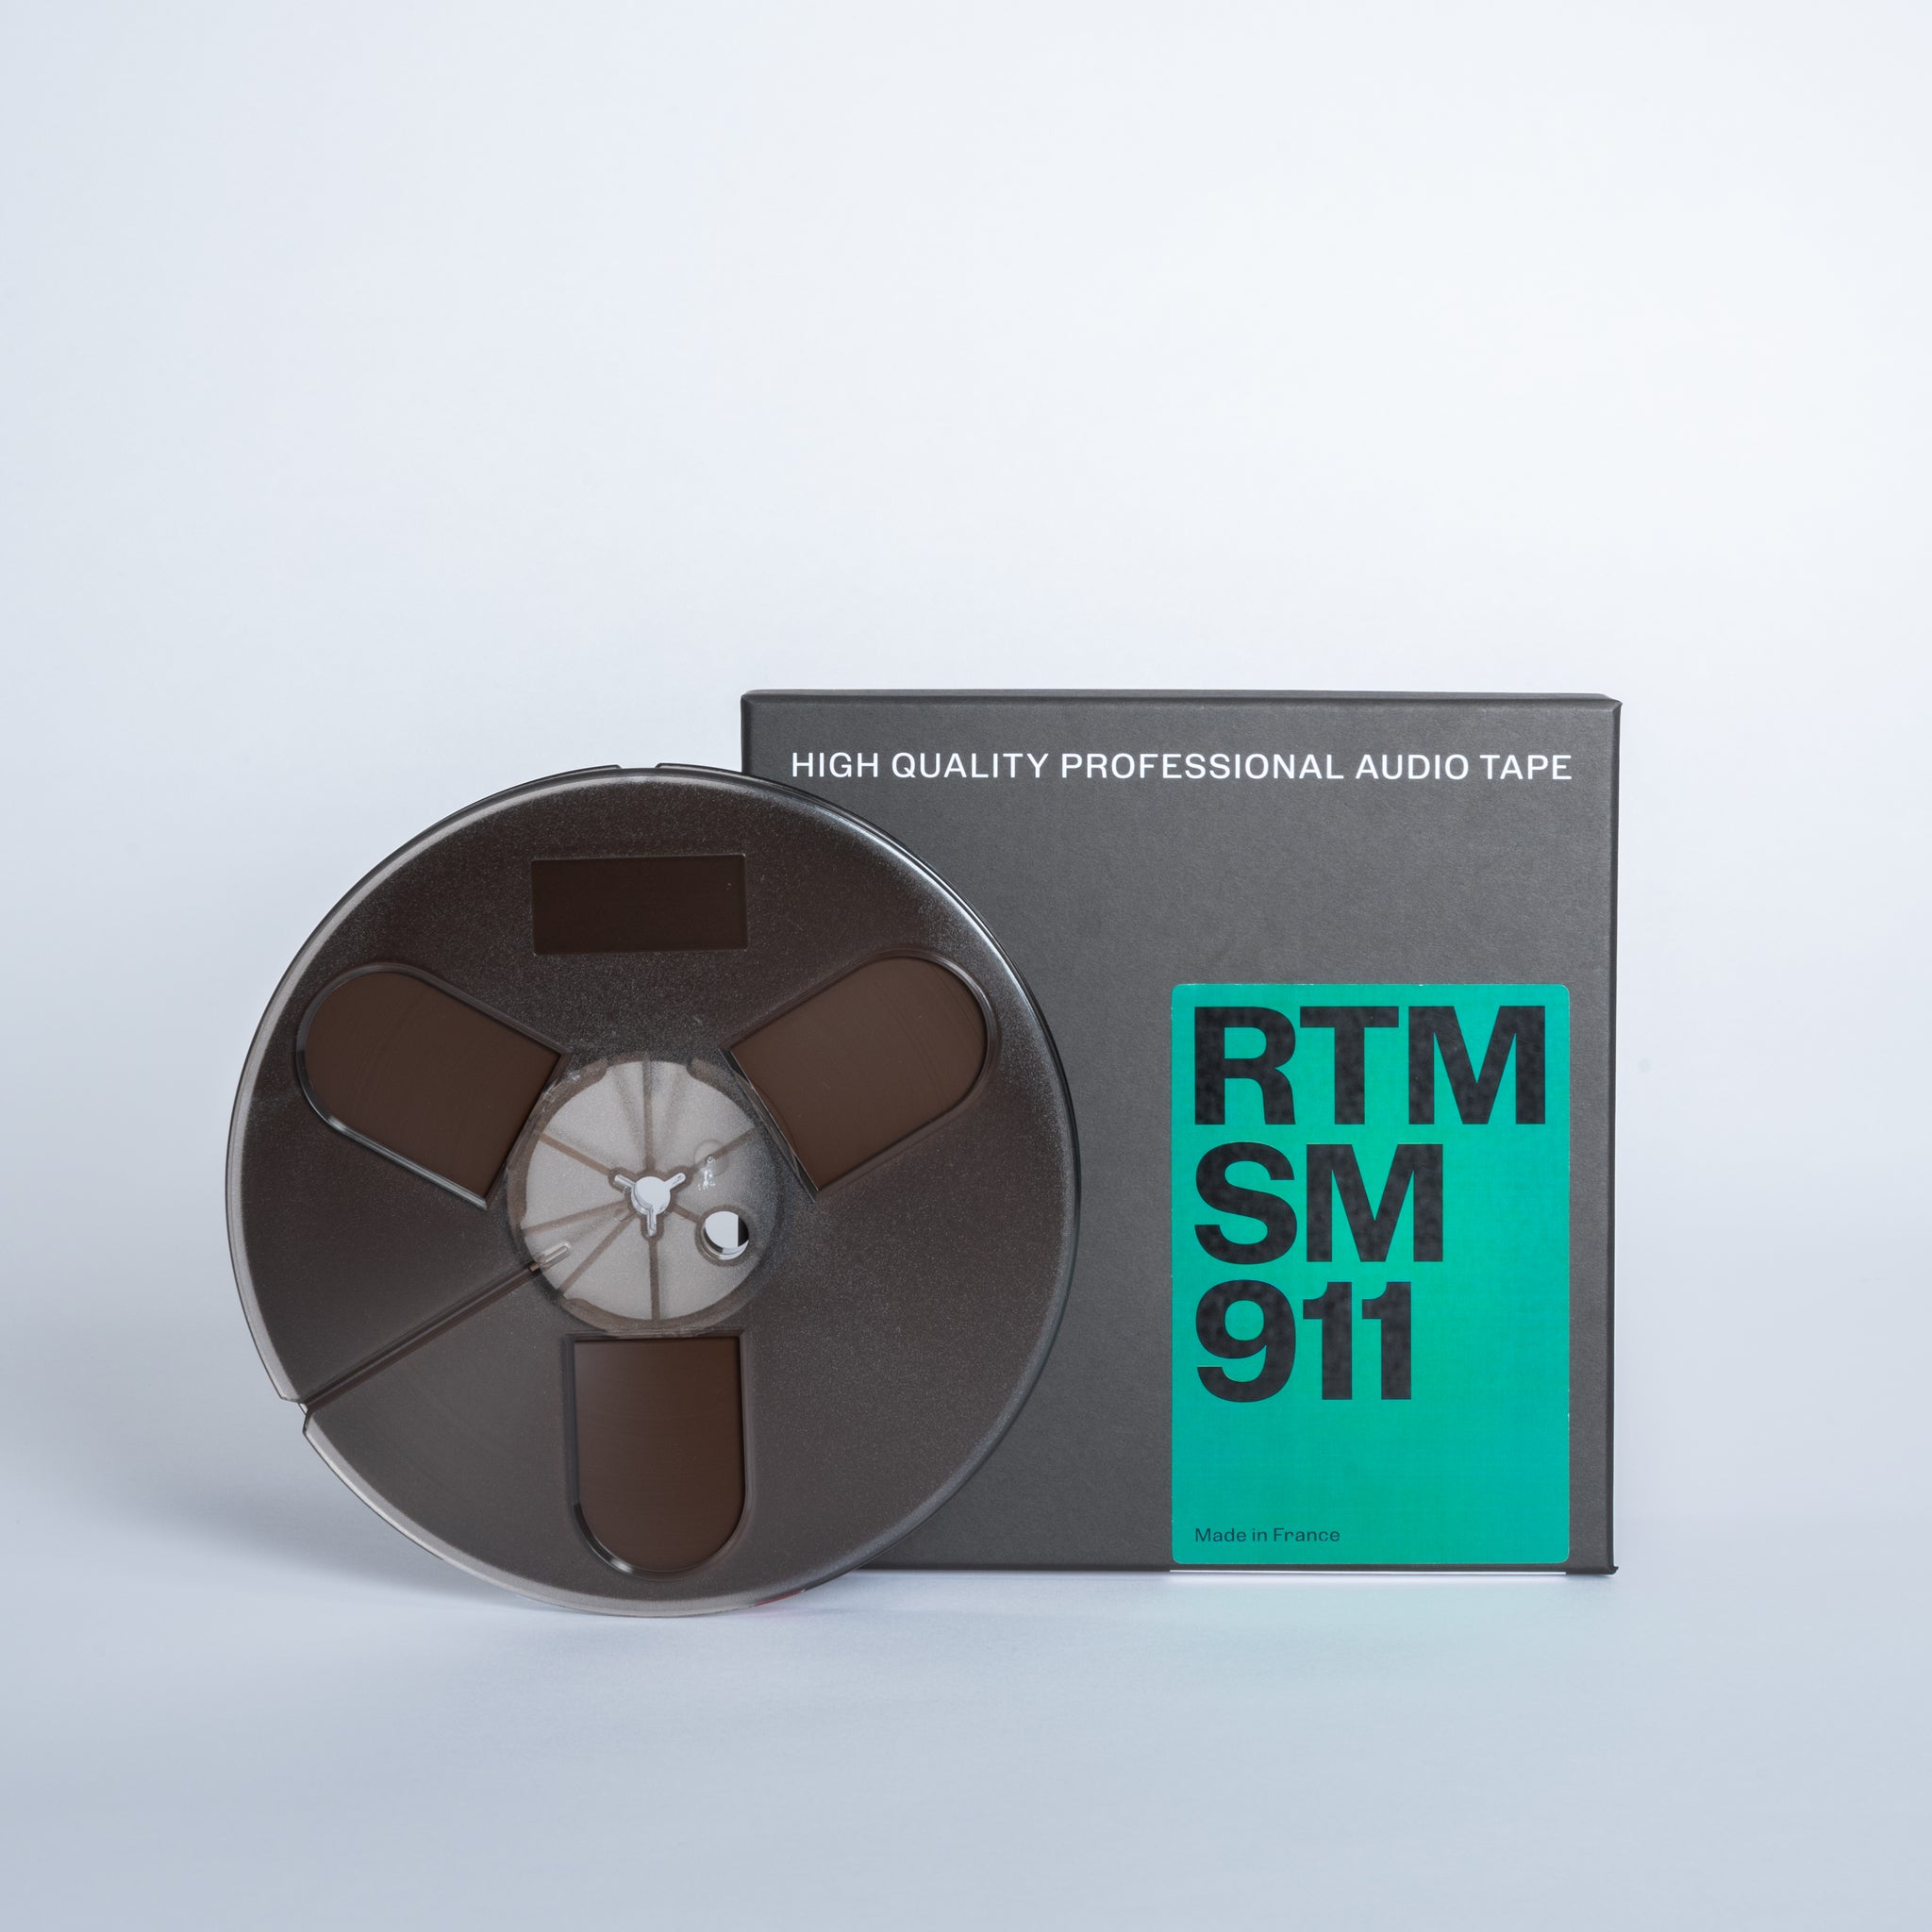 1/4 SM911 Tape on 7 inch plastic reel in cardboard box –